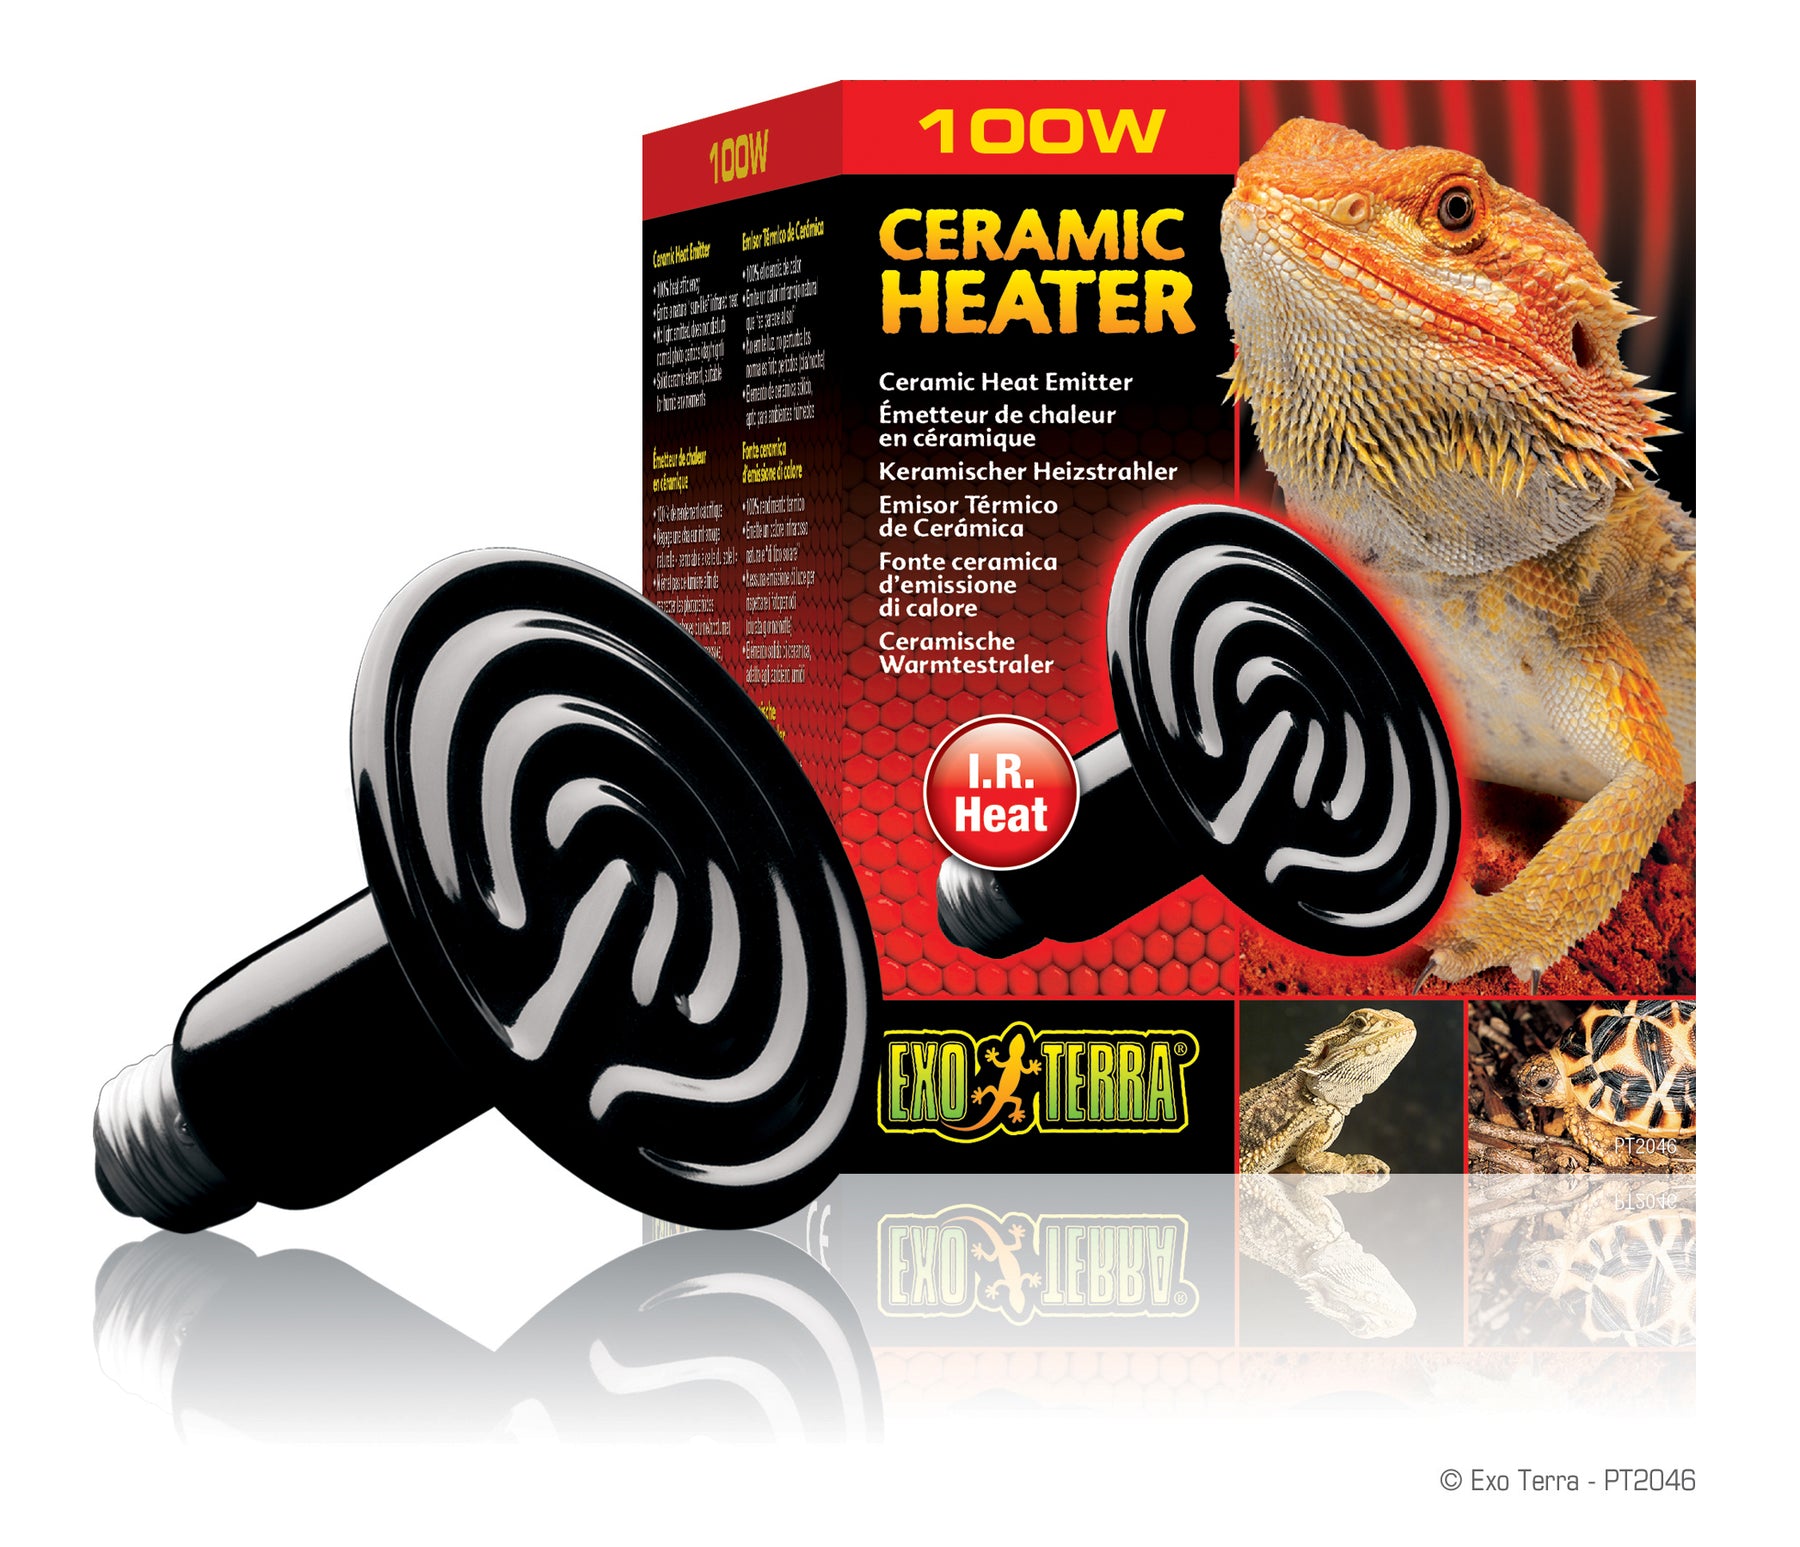 Exo Terra Ceramic Heater, 100w